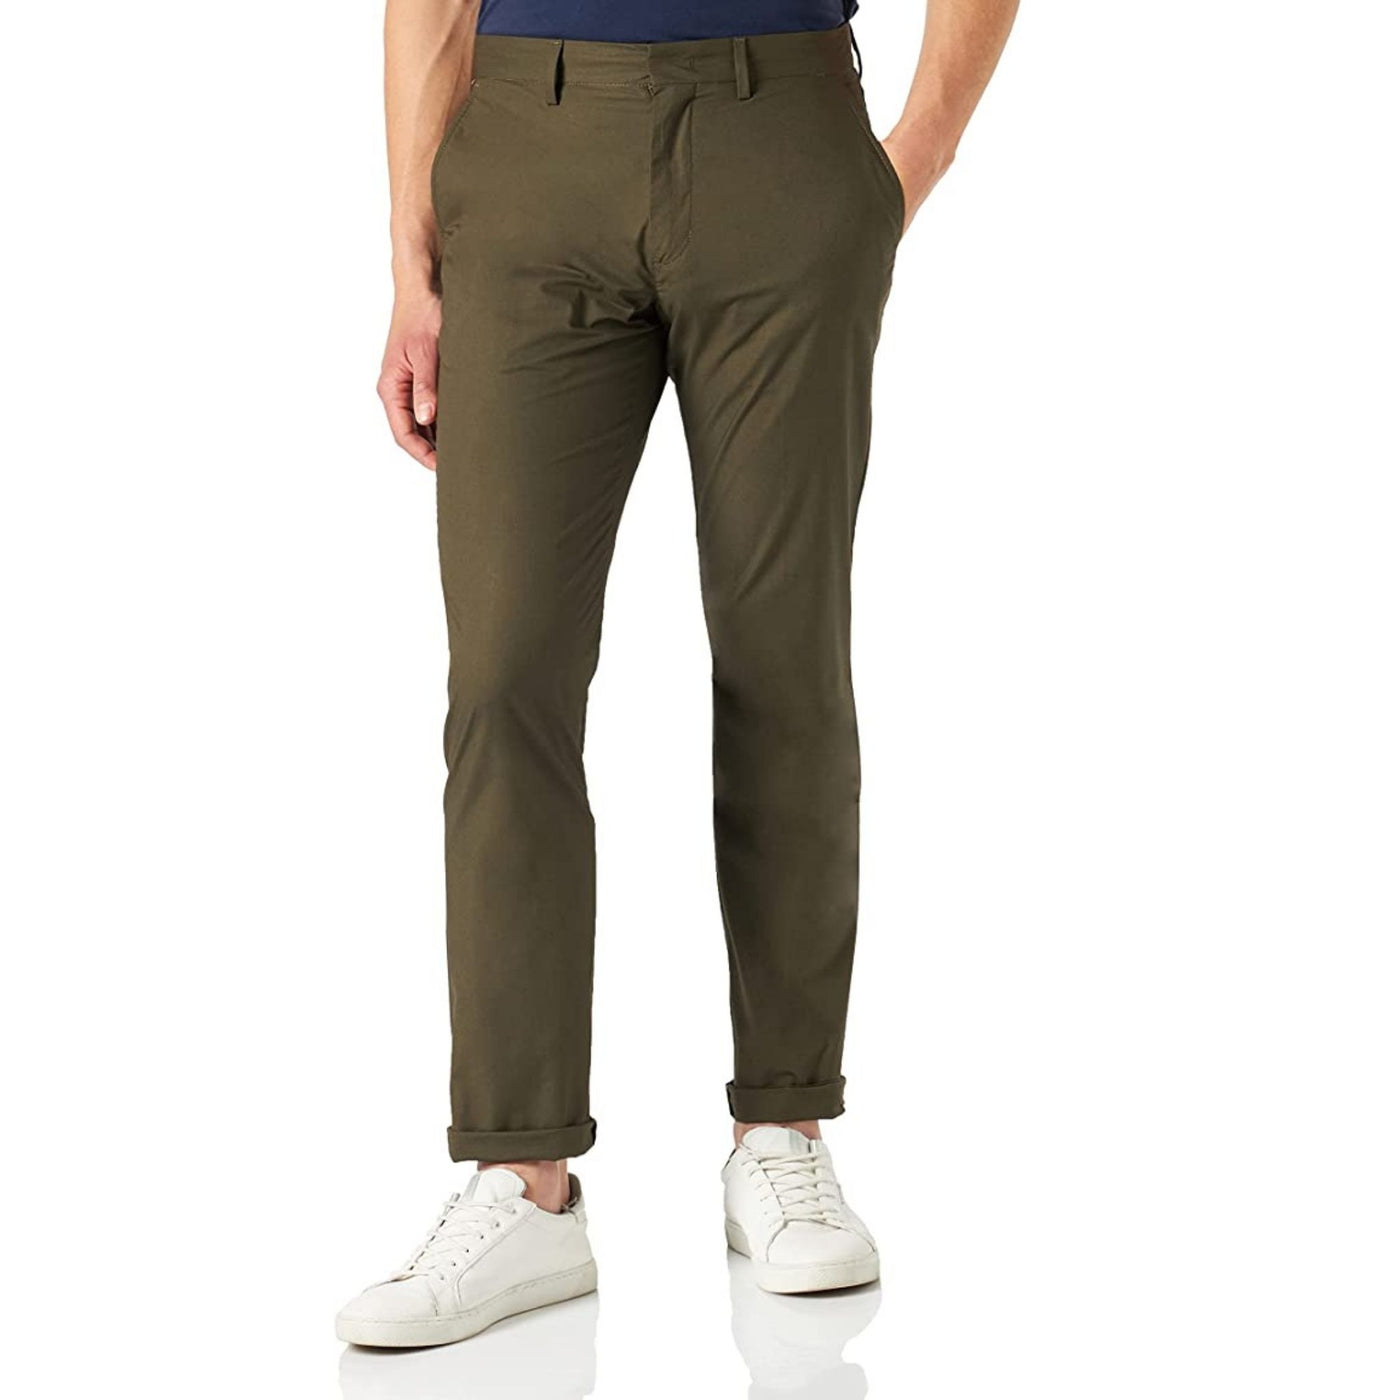 Pantalone da uomo verde militare firmato Tommy Hilfiger su modello vista frontale